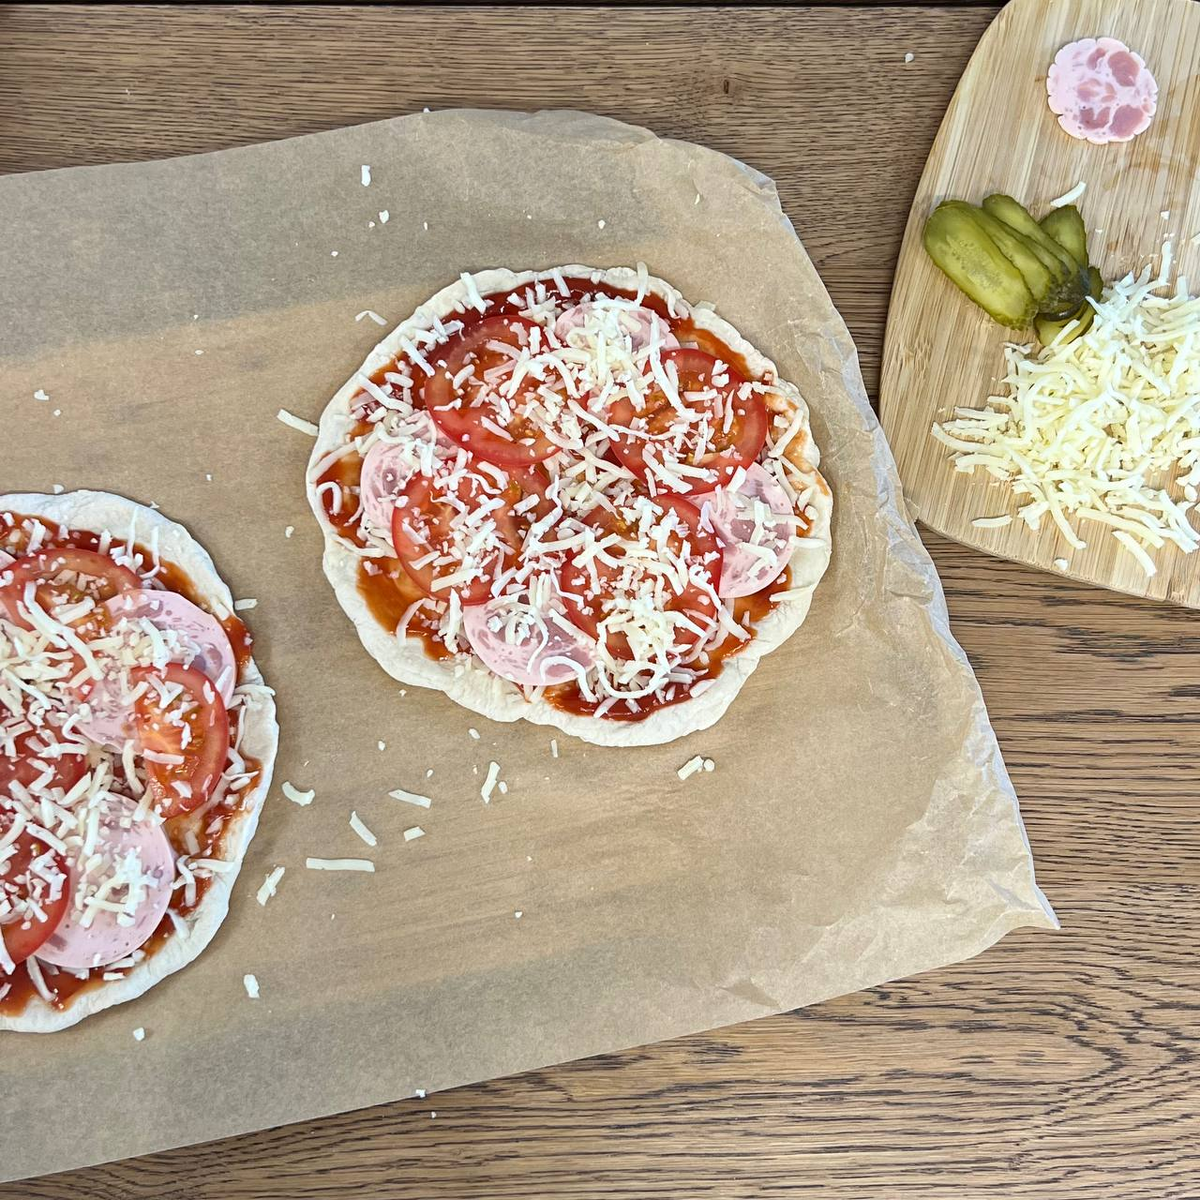 школьная пицца рецепт в домашних условиях фото 70